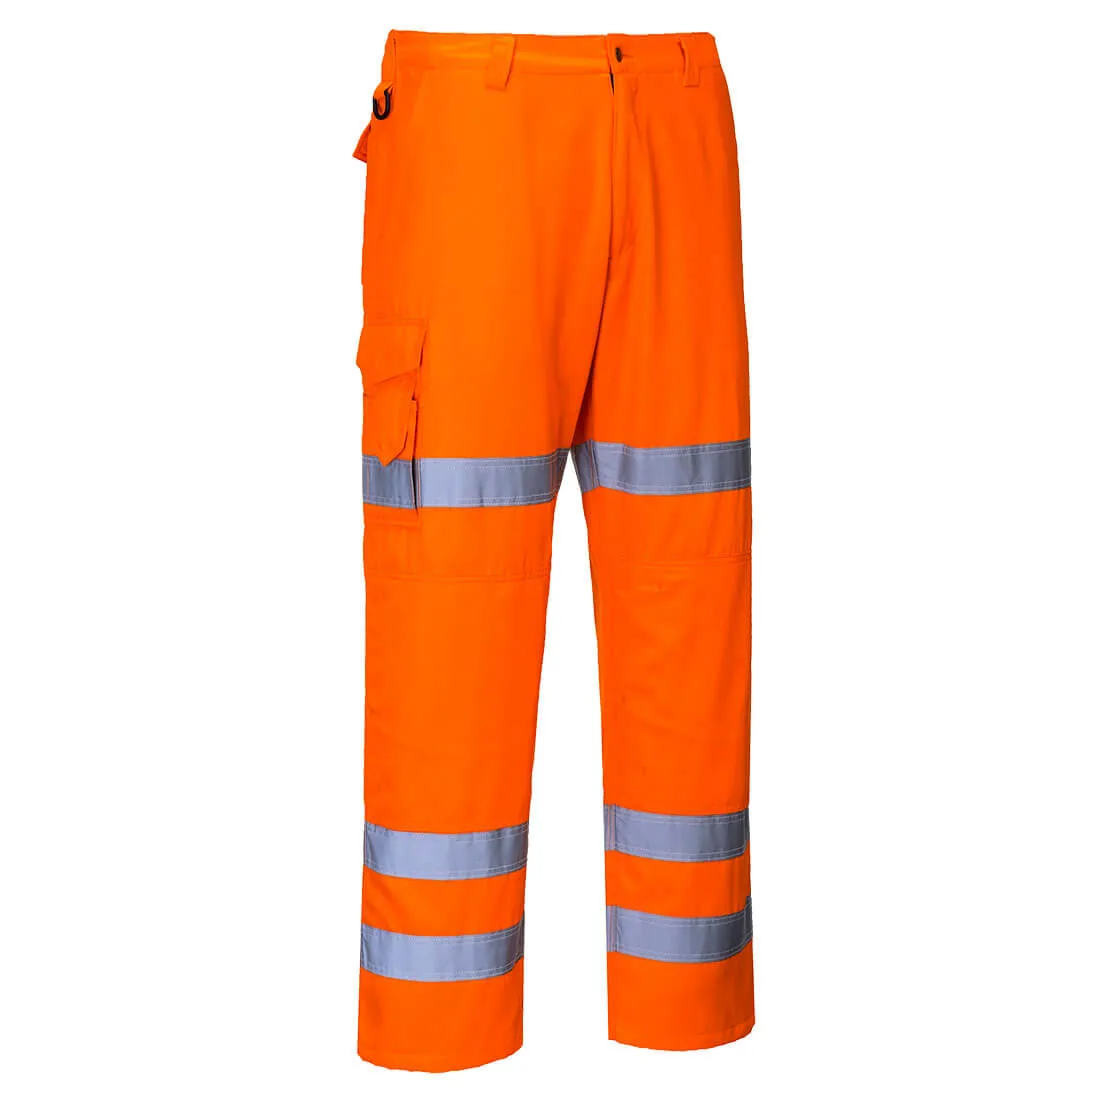 Portwest RT49 Hi Vis Band Combat Trousers - Orange, Medium, 31"